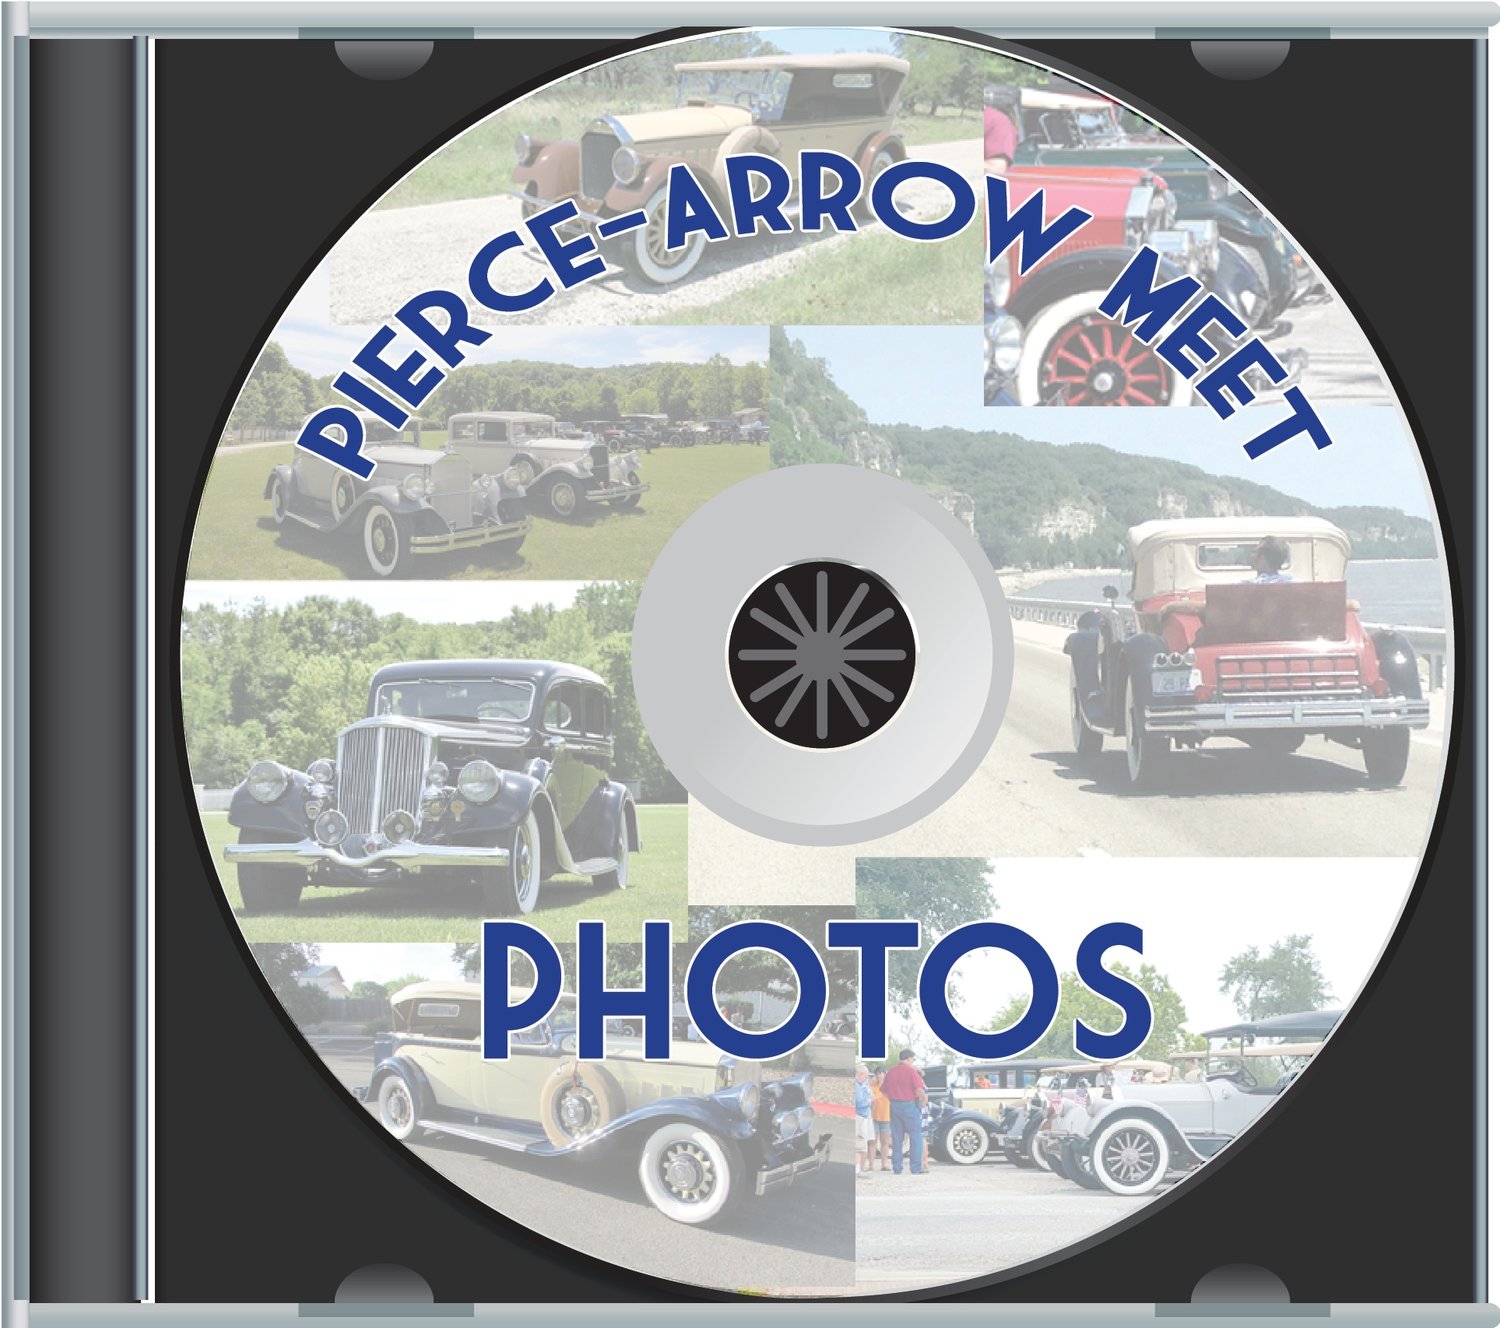 Pierce-Arrow Annual Meet Slide Show CDs